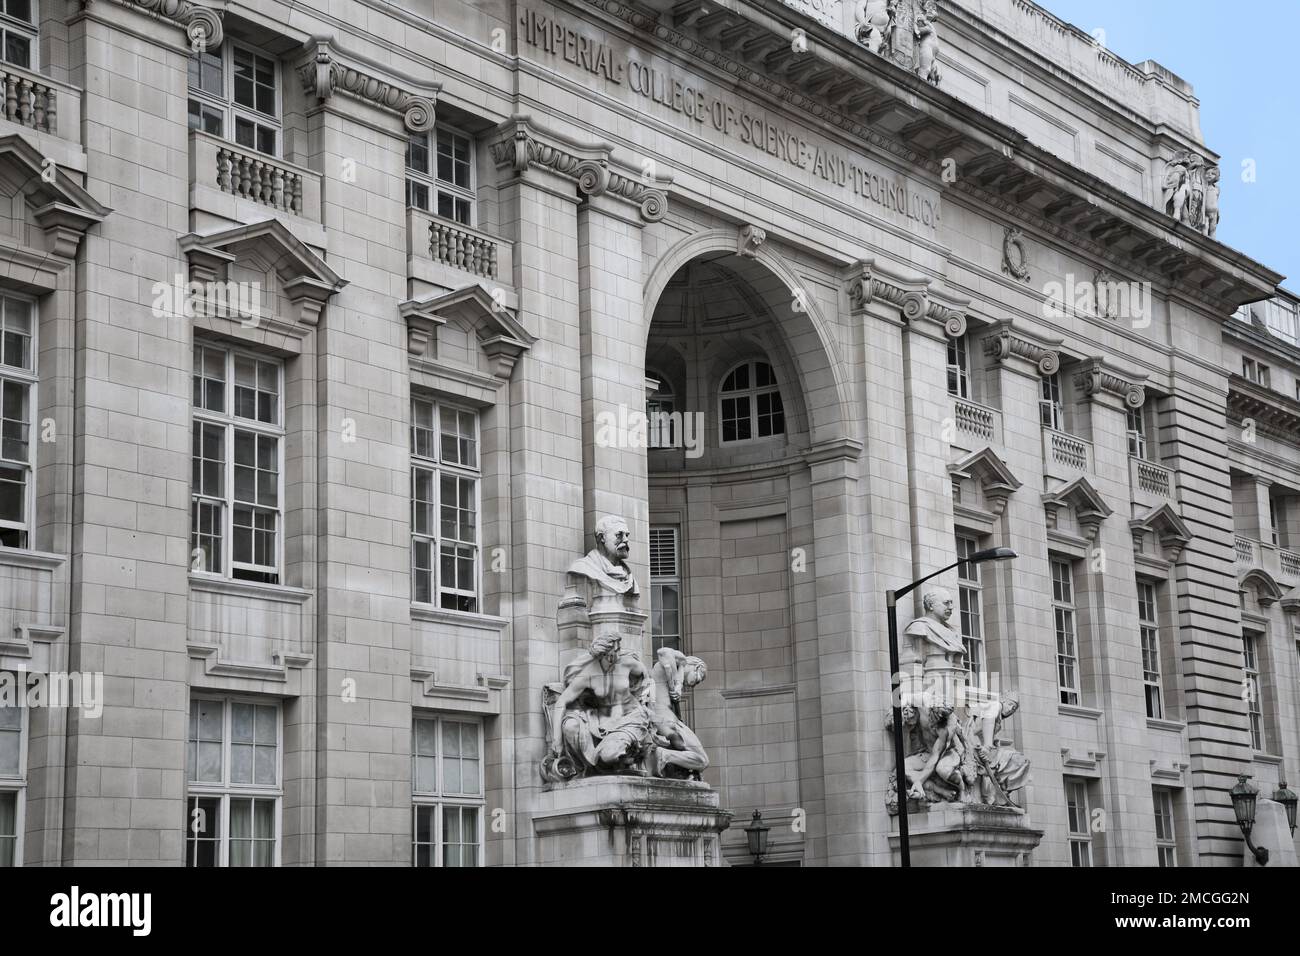 London, England - Juli 2009: Imperial College of Science, eine führende Technologie-Universität, mit barocken Statuen um den Eingang Stockfoto